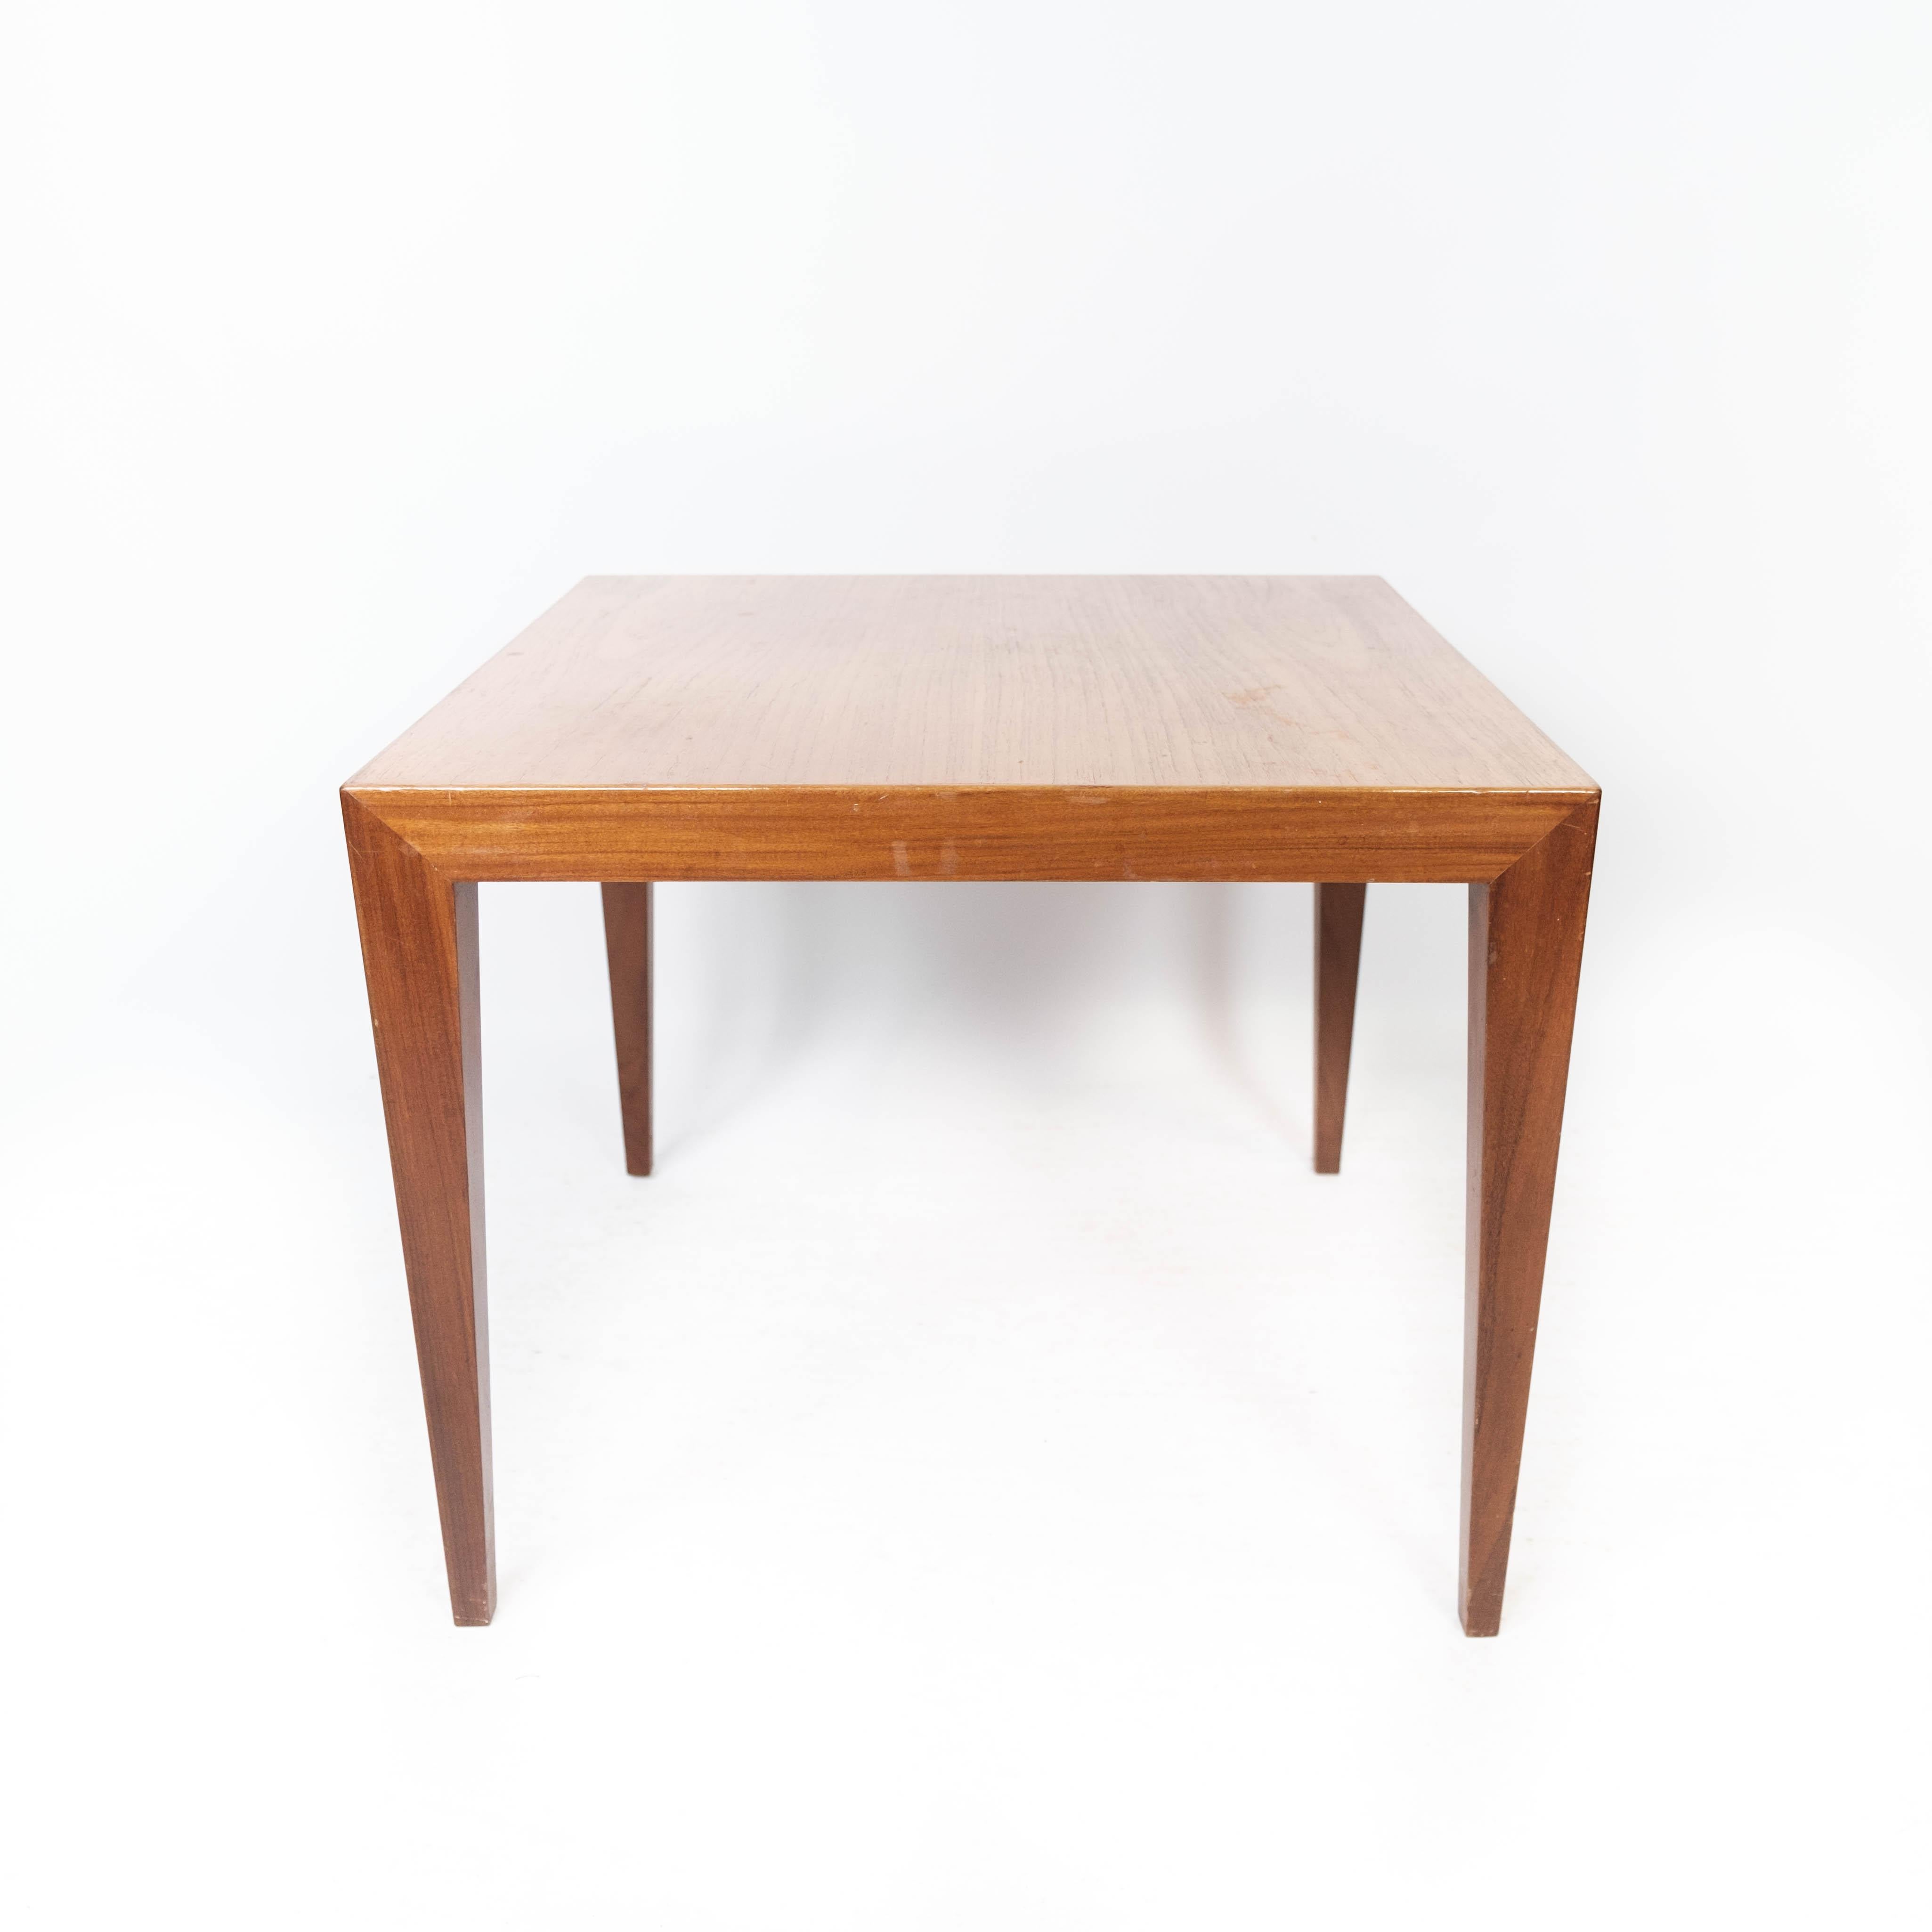 Beistelltisch aus Teakholz mit dänischem Design, hergestellt von Haslev Furniture in den 1960er Jahren. Der Tisch ist in einem sehr guten Vintage-Zustand.